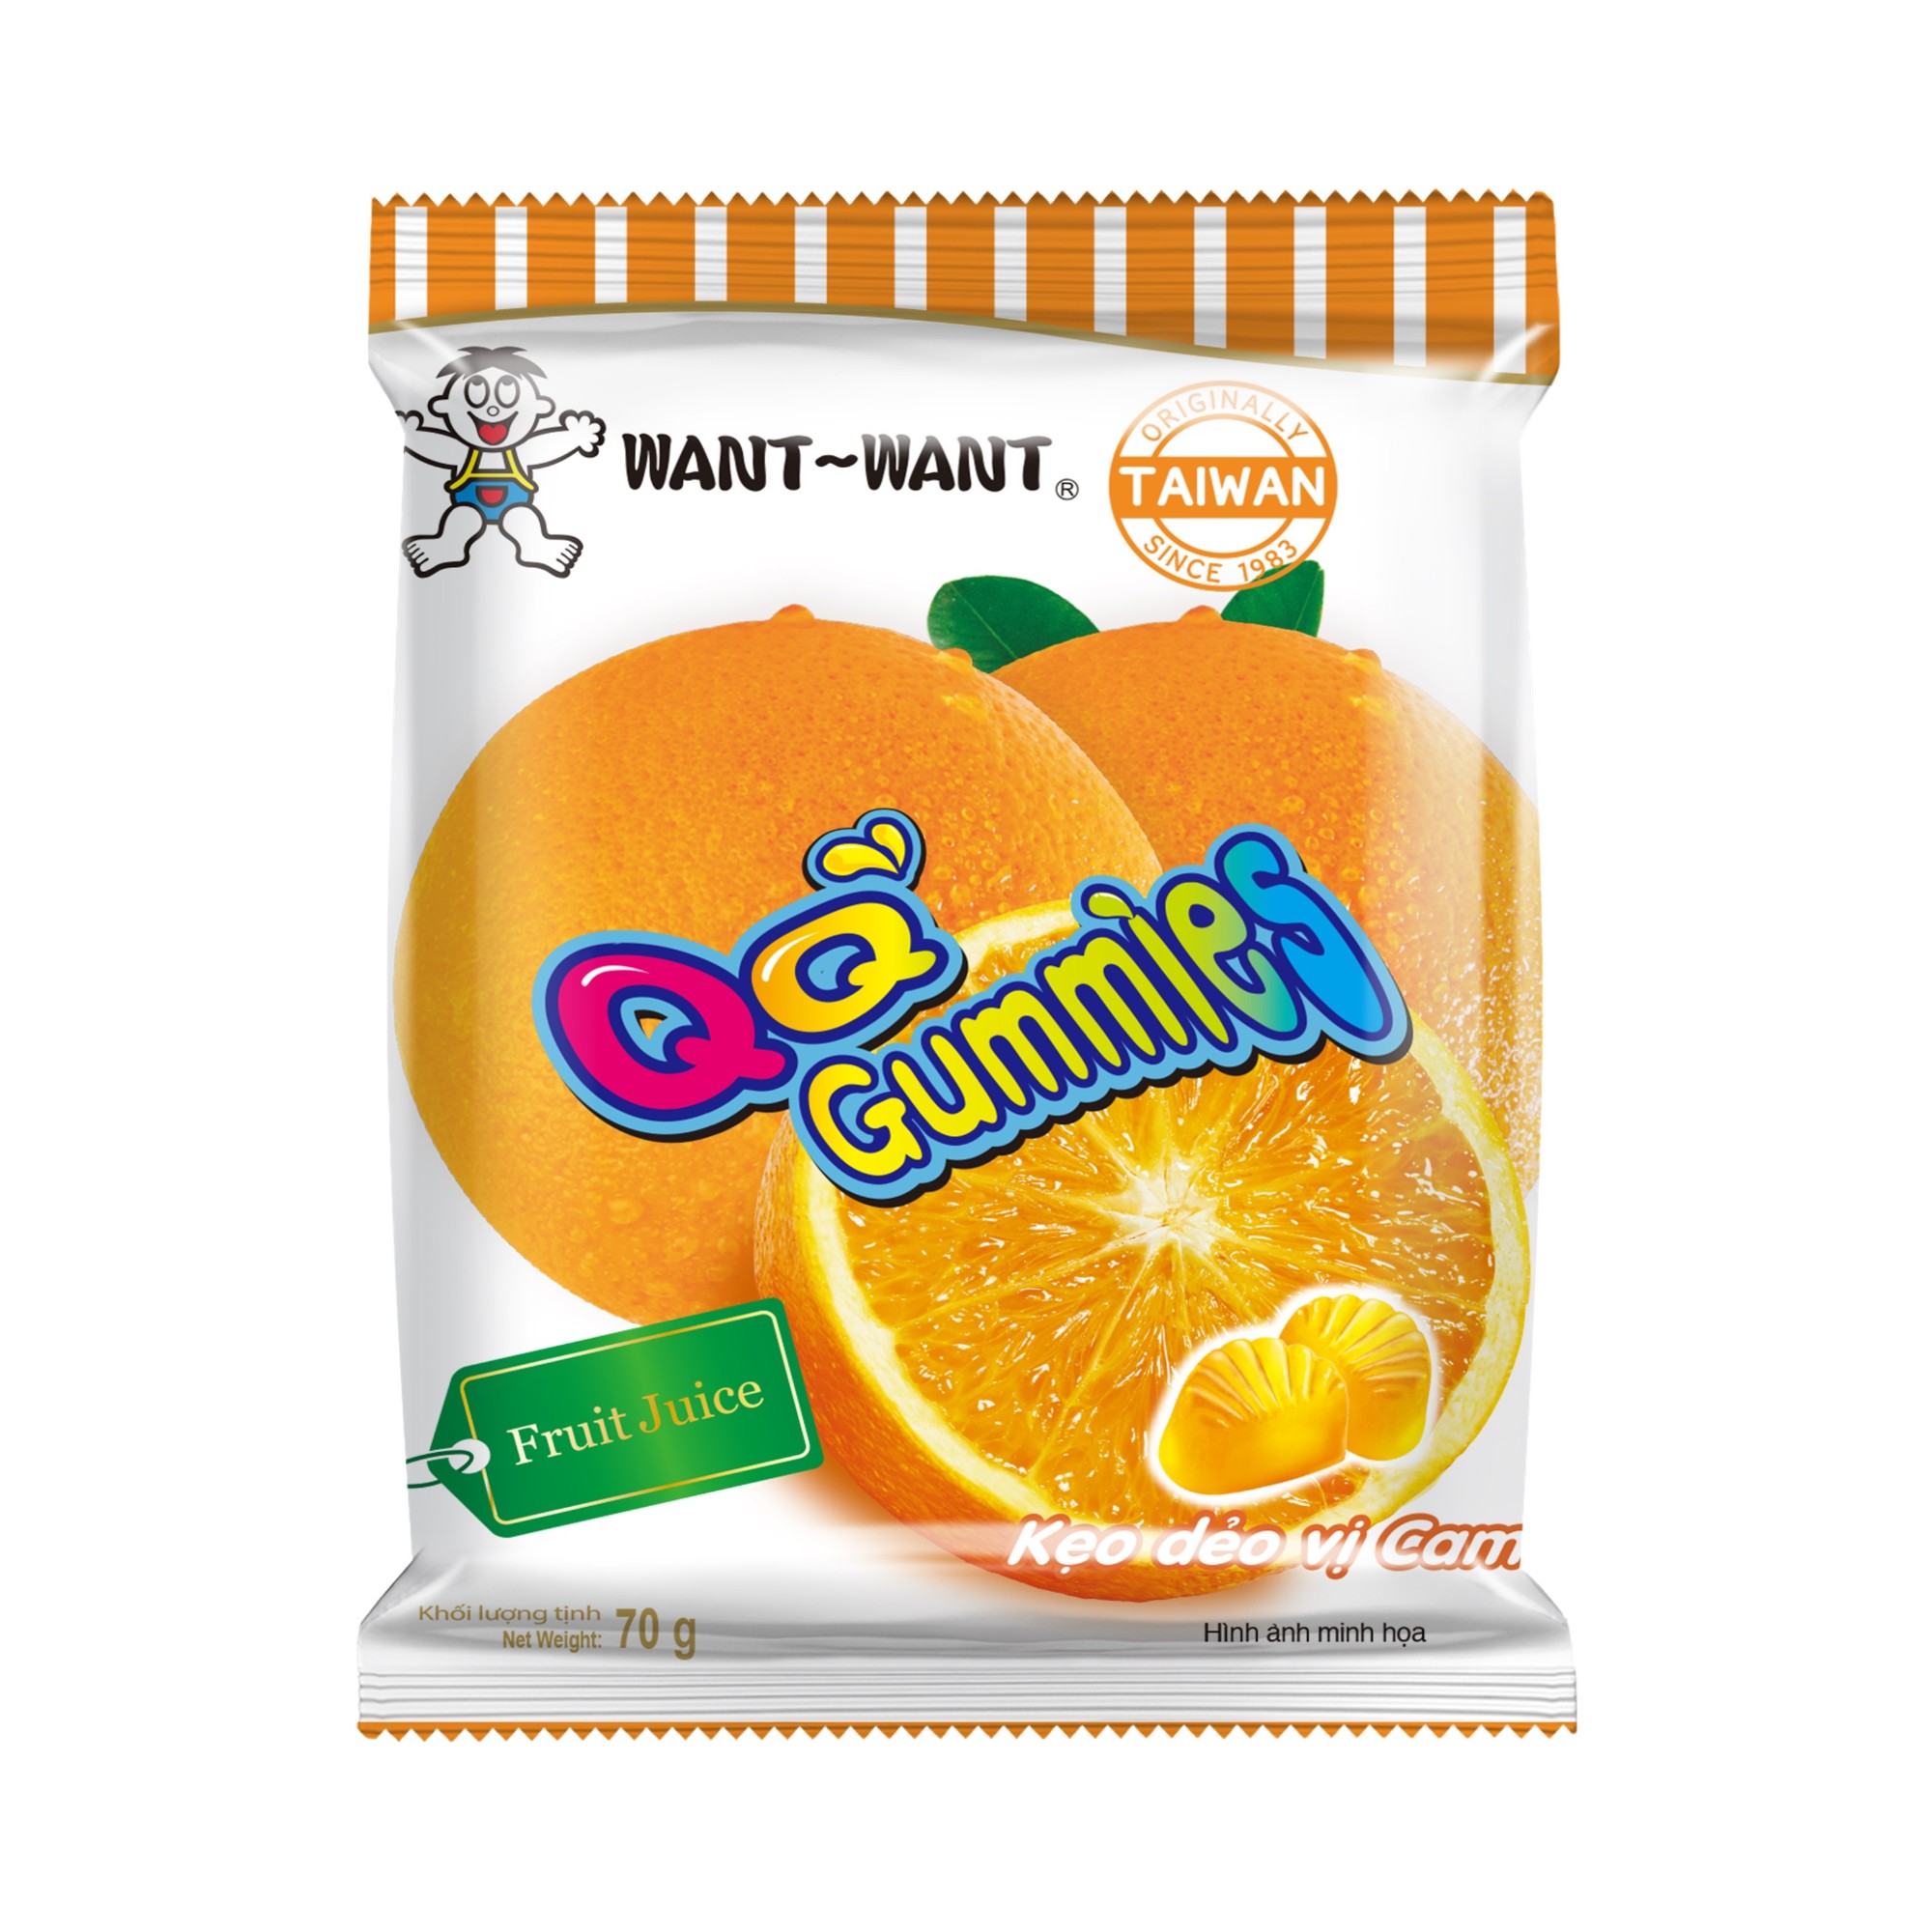 WANT WANT QQ Gummies Peach Flavor 20g